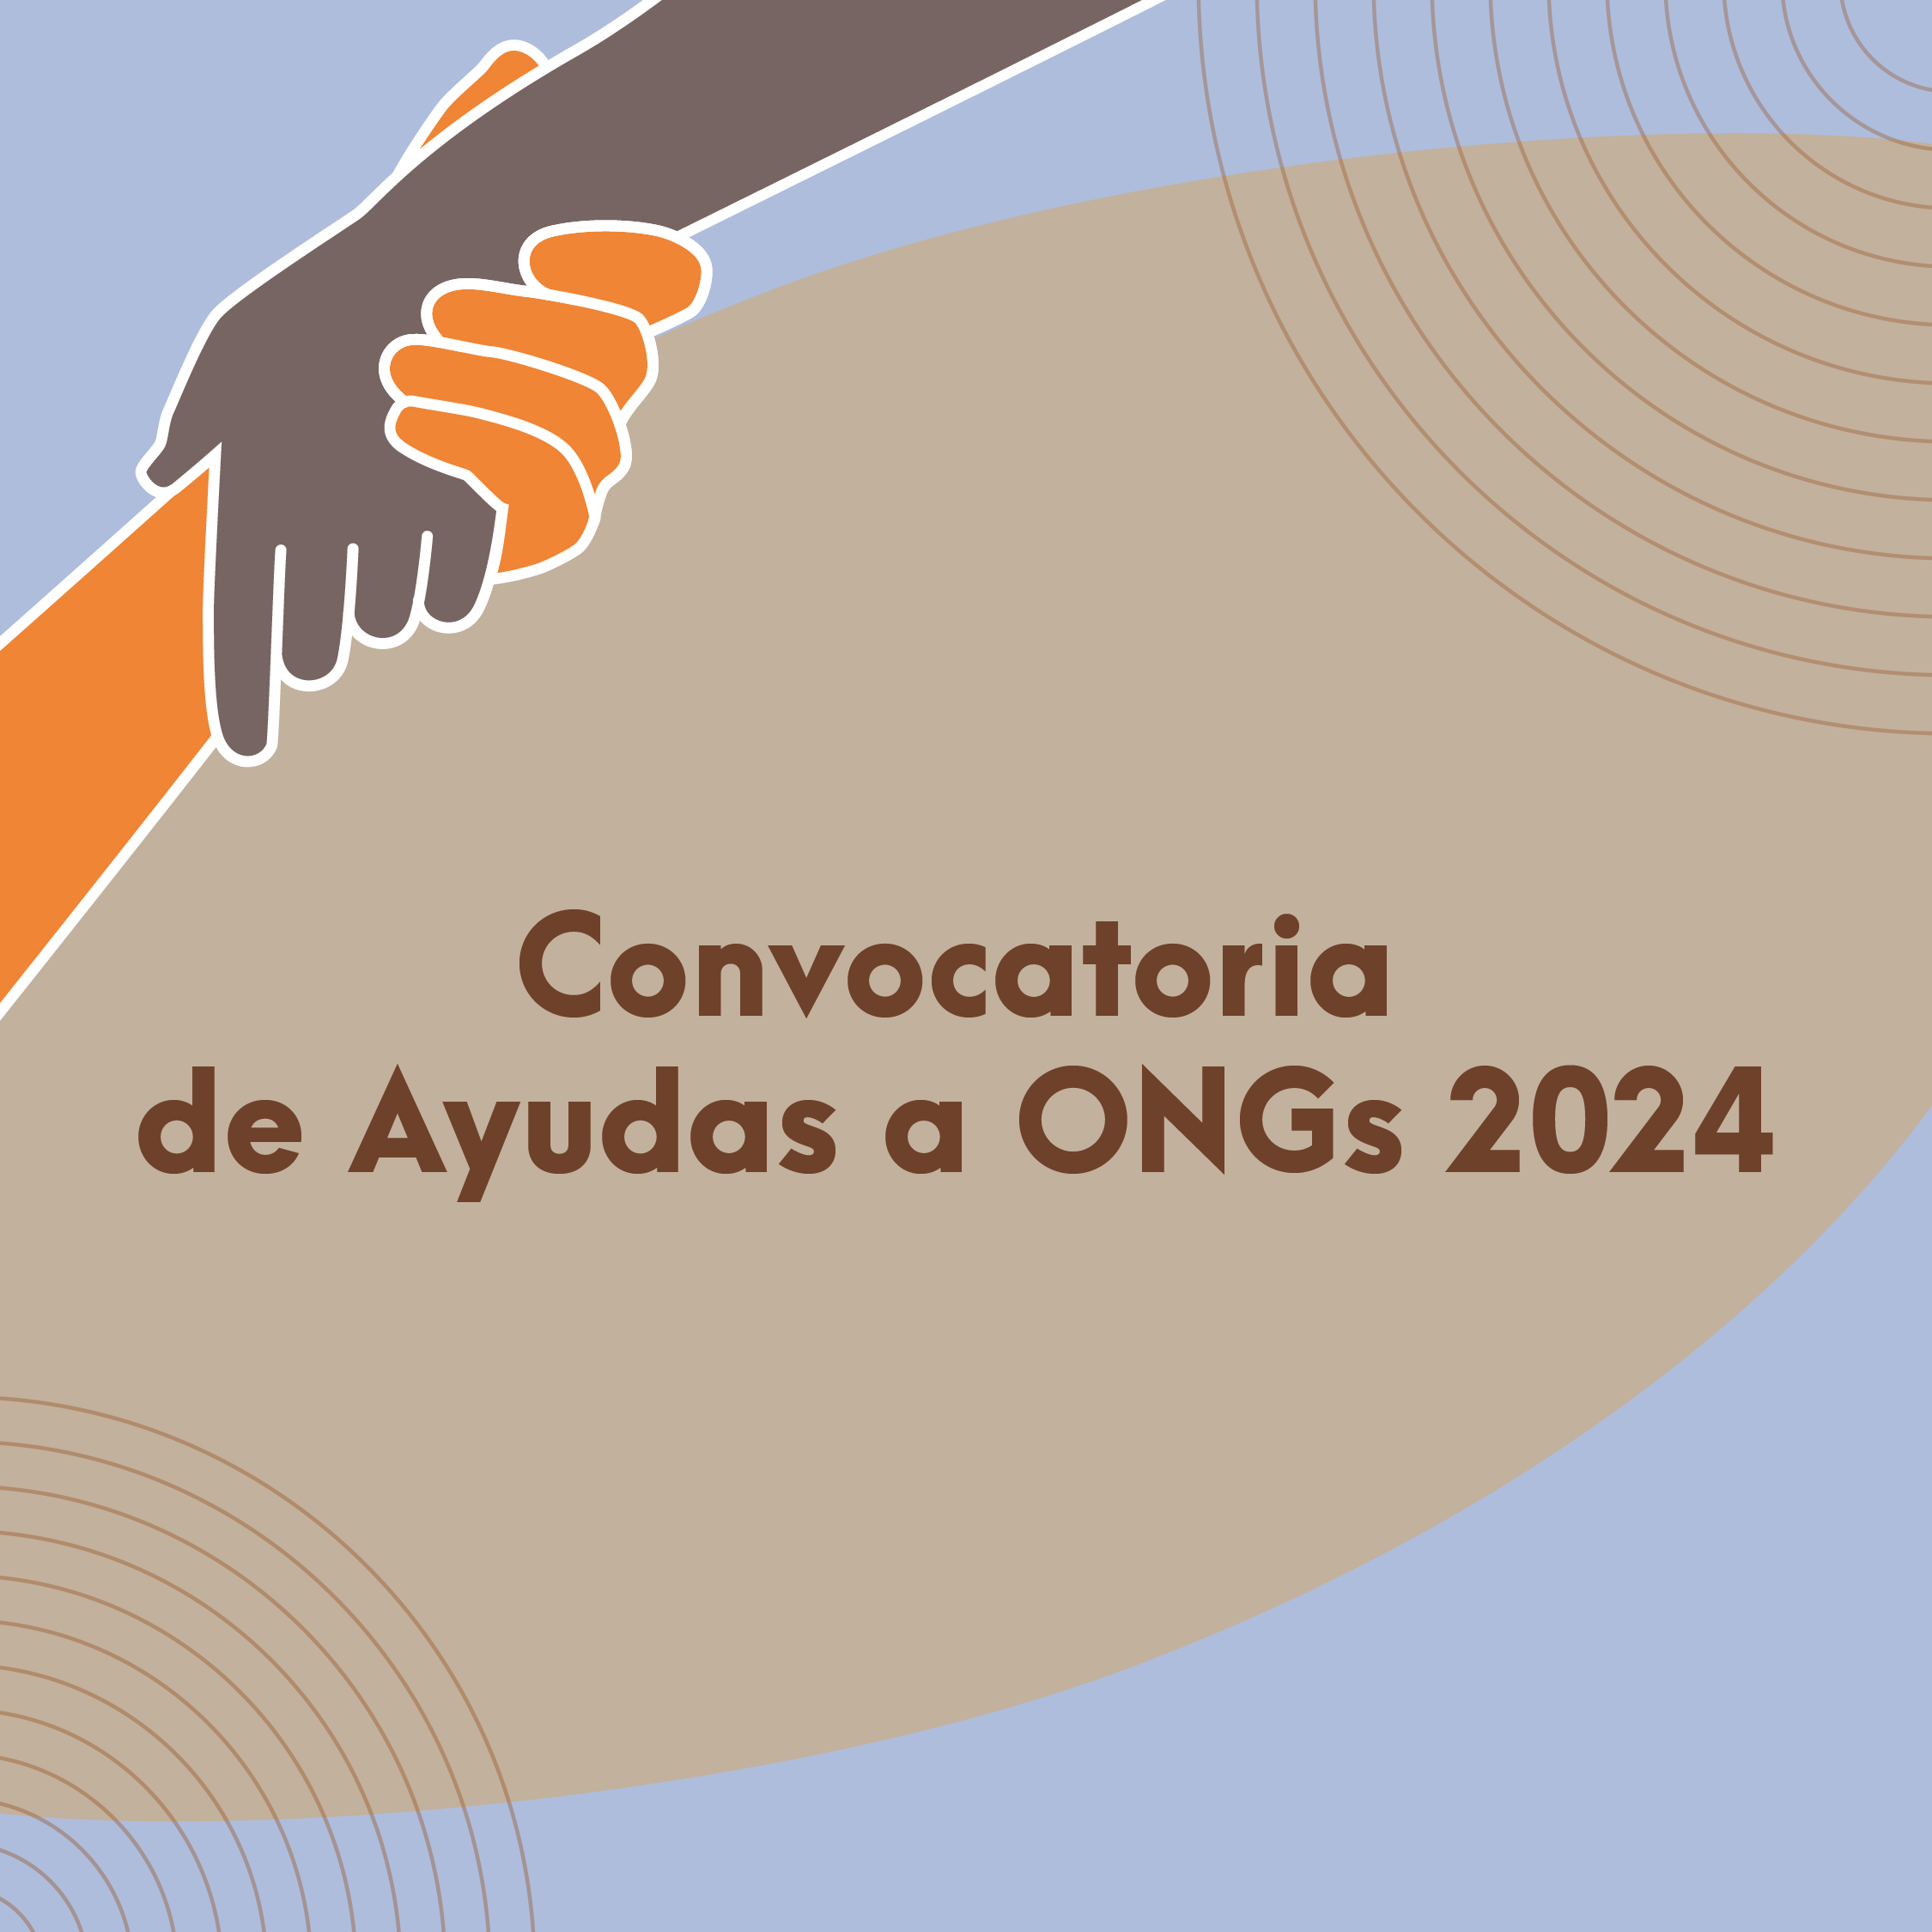 Convocatoria de Ayudas a ONG 2024, Entidades Privadas sin fines de lucro de ámbito estatal,